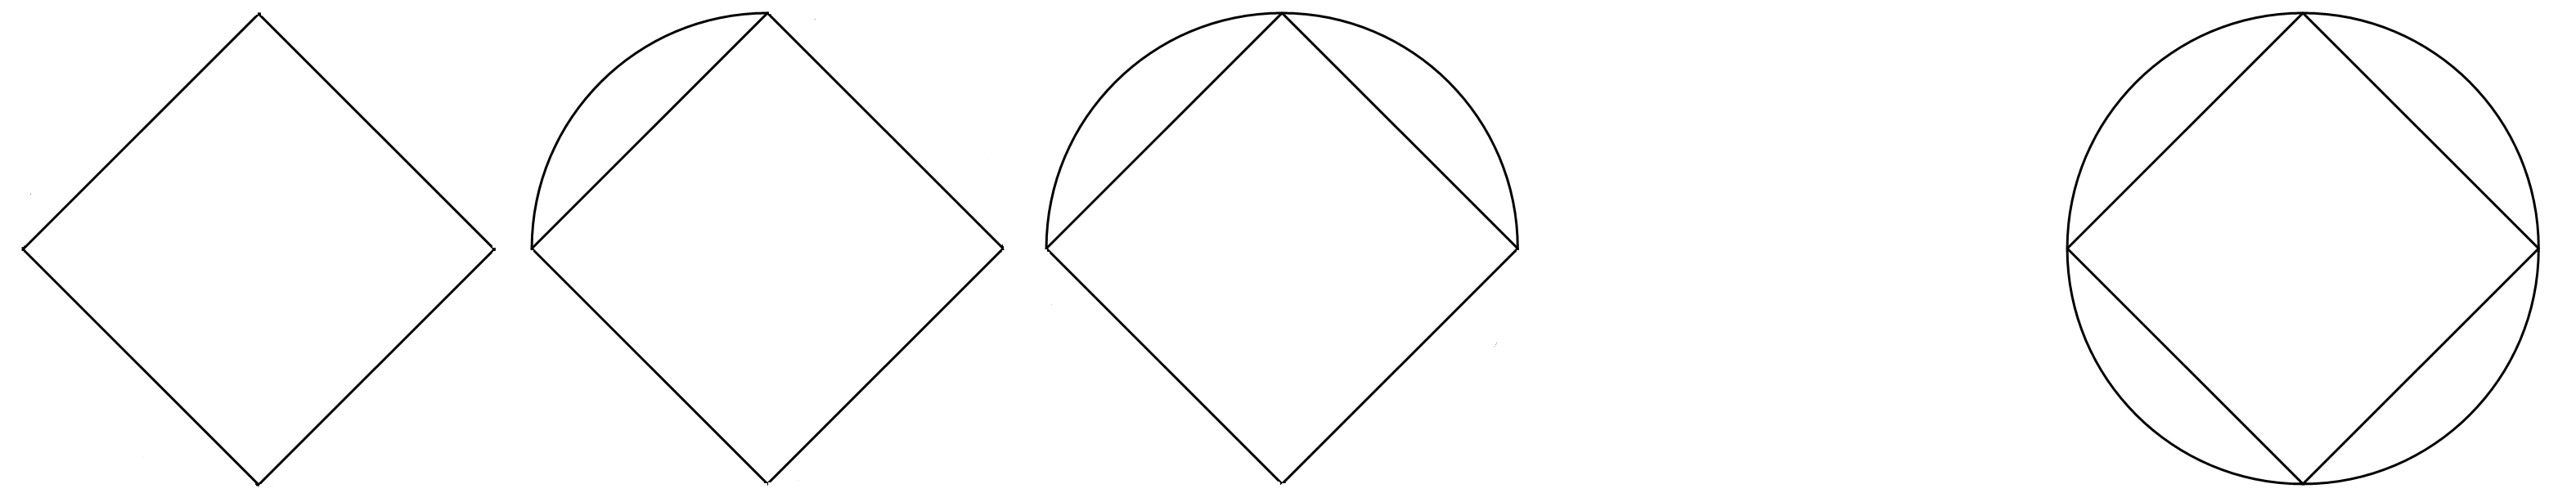 Урок геометрии. Тема: Треугольник. Высота, биссектриса и медиана треугольника